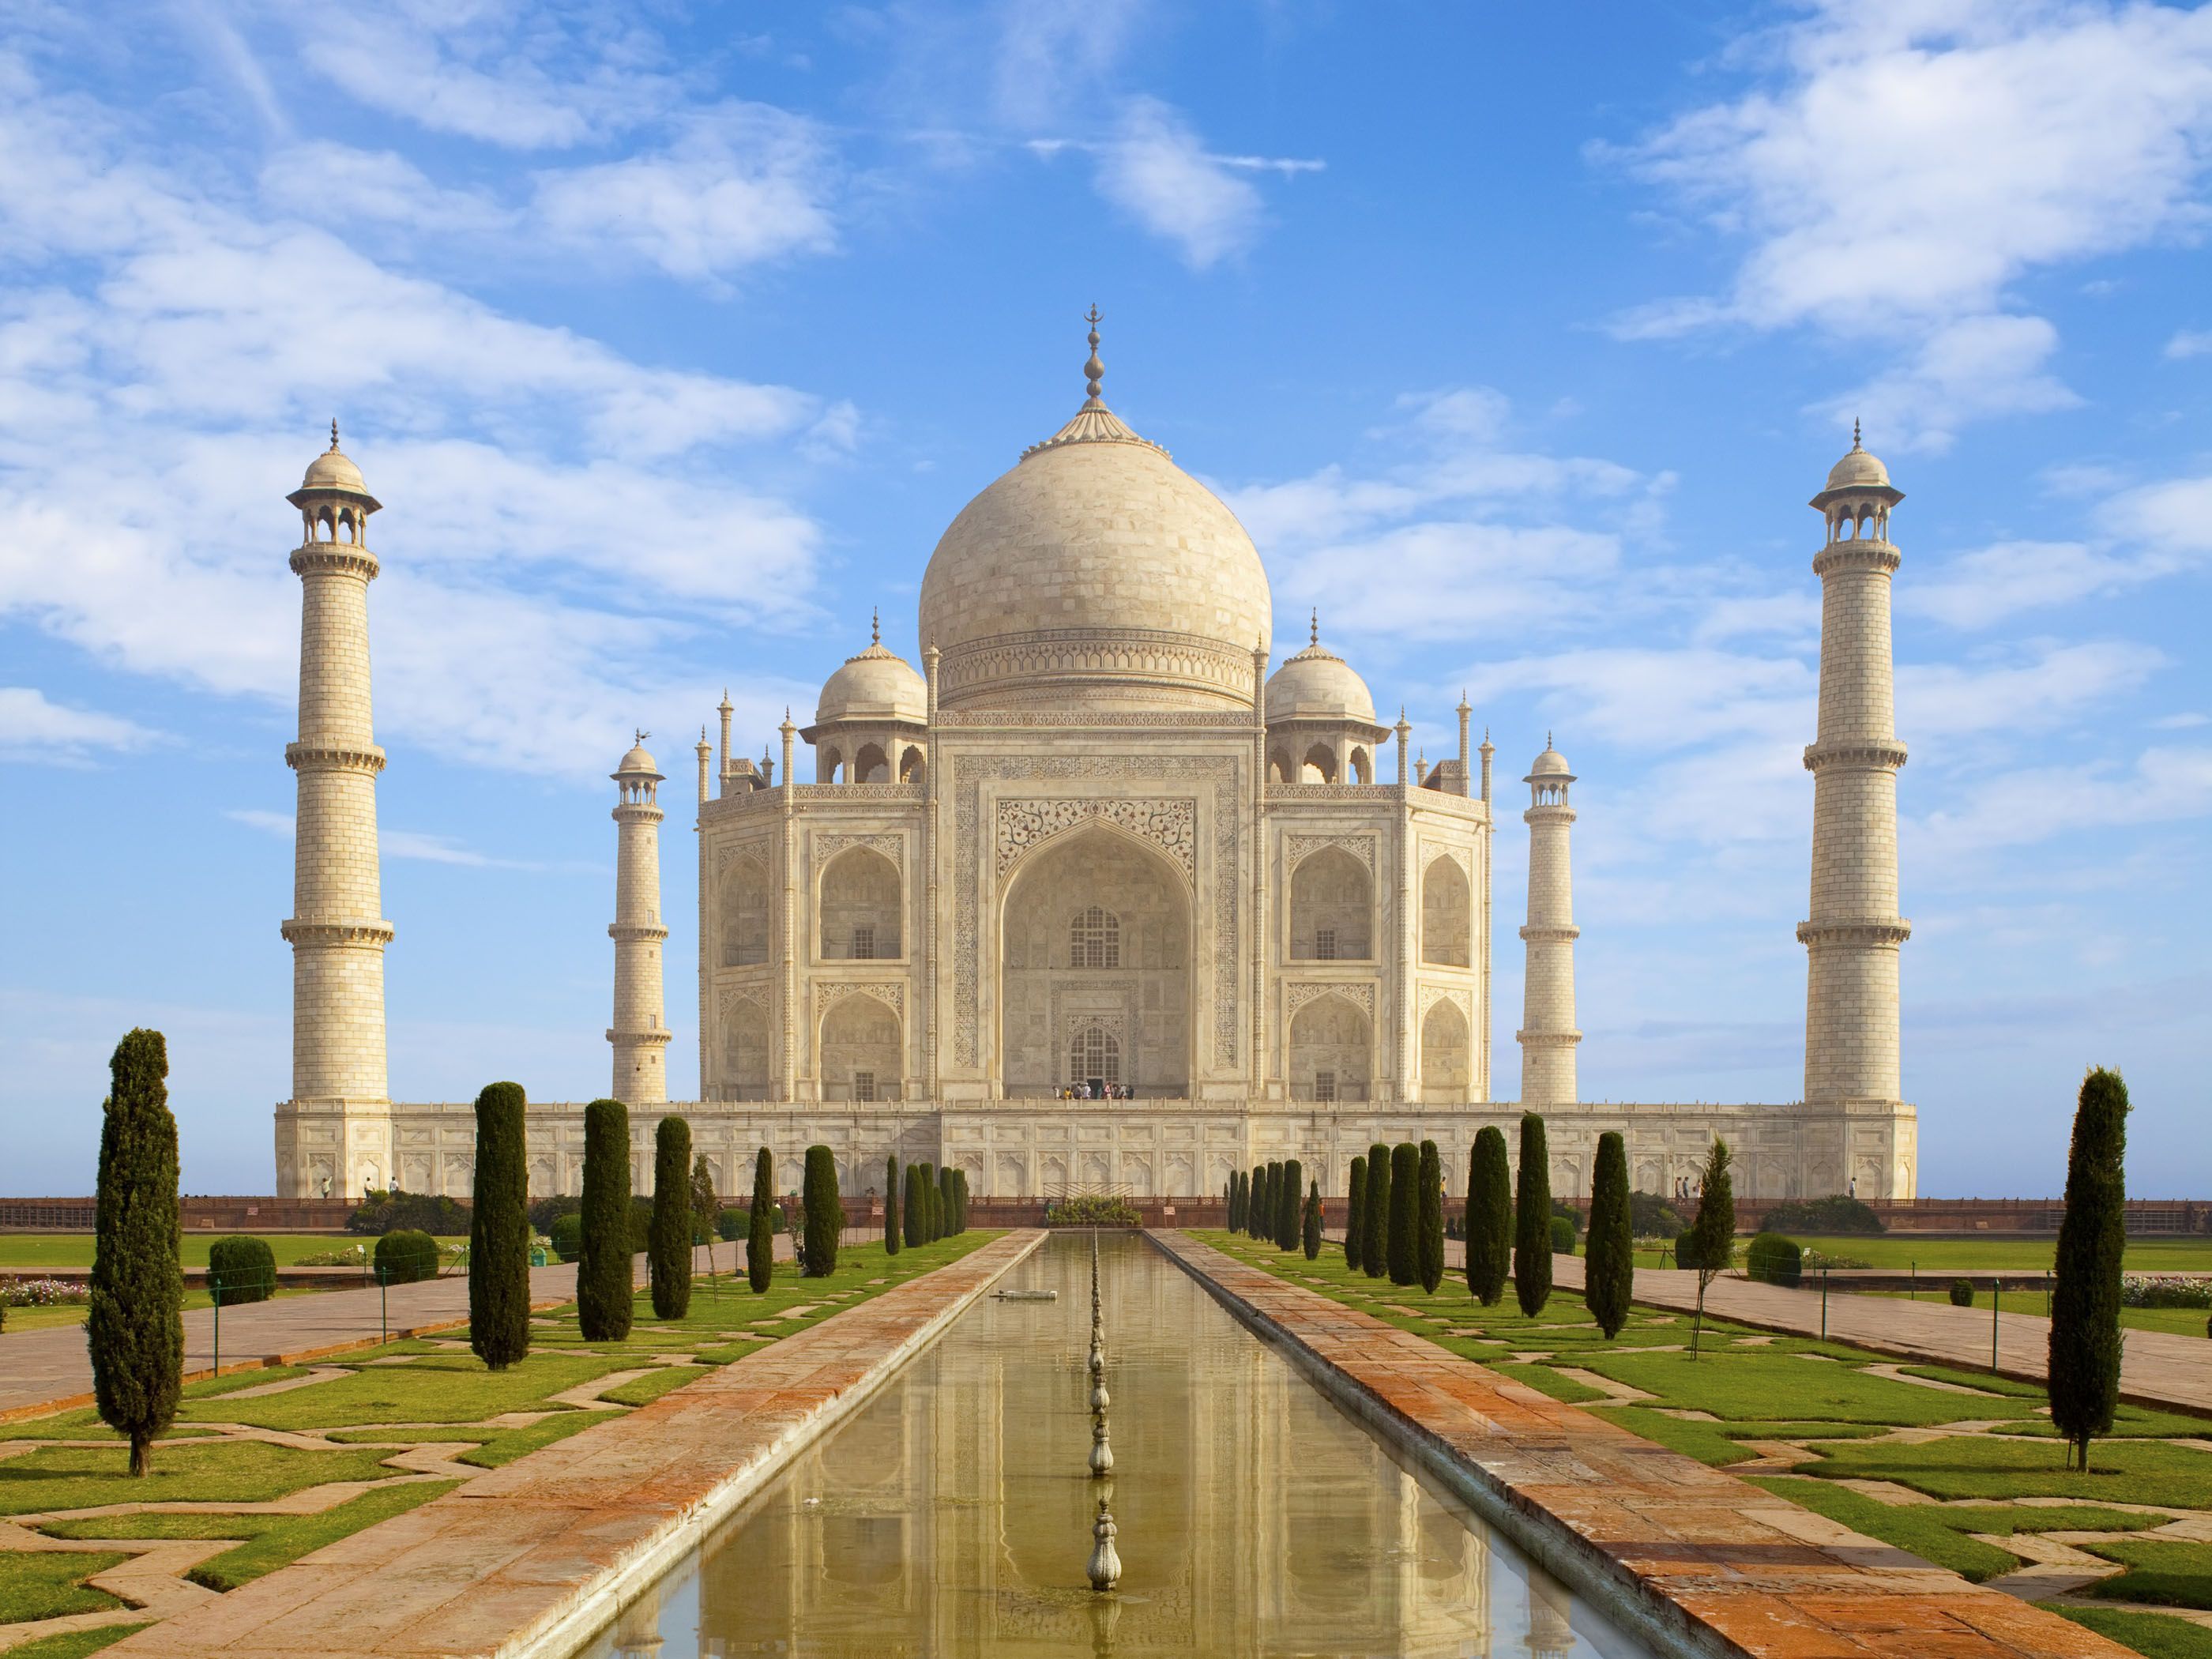 Taj Mahal Image For Free Wallpaper - Taj Mahal India Architecture  Slideshare - 2800x2100 Wallpaper 